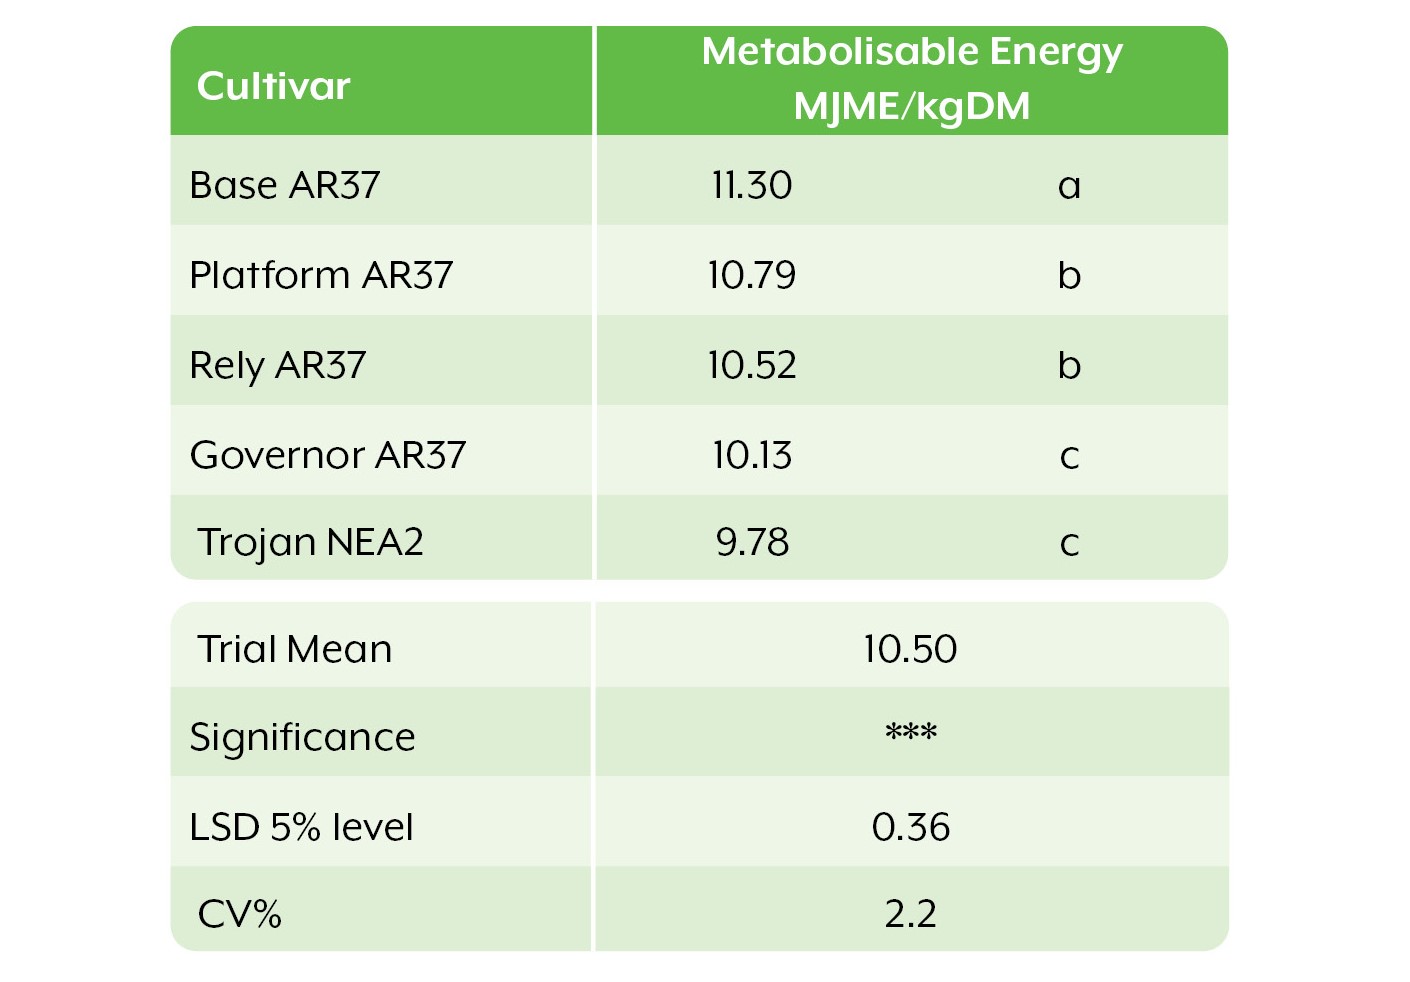 Cultivar_Metabolisable_Energy_table_Oct.20.jpg